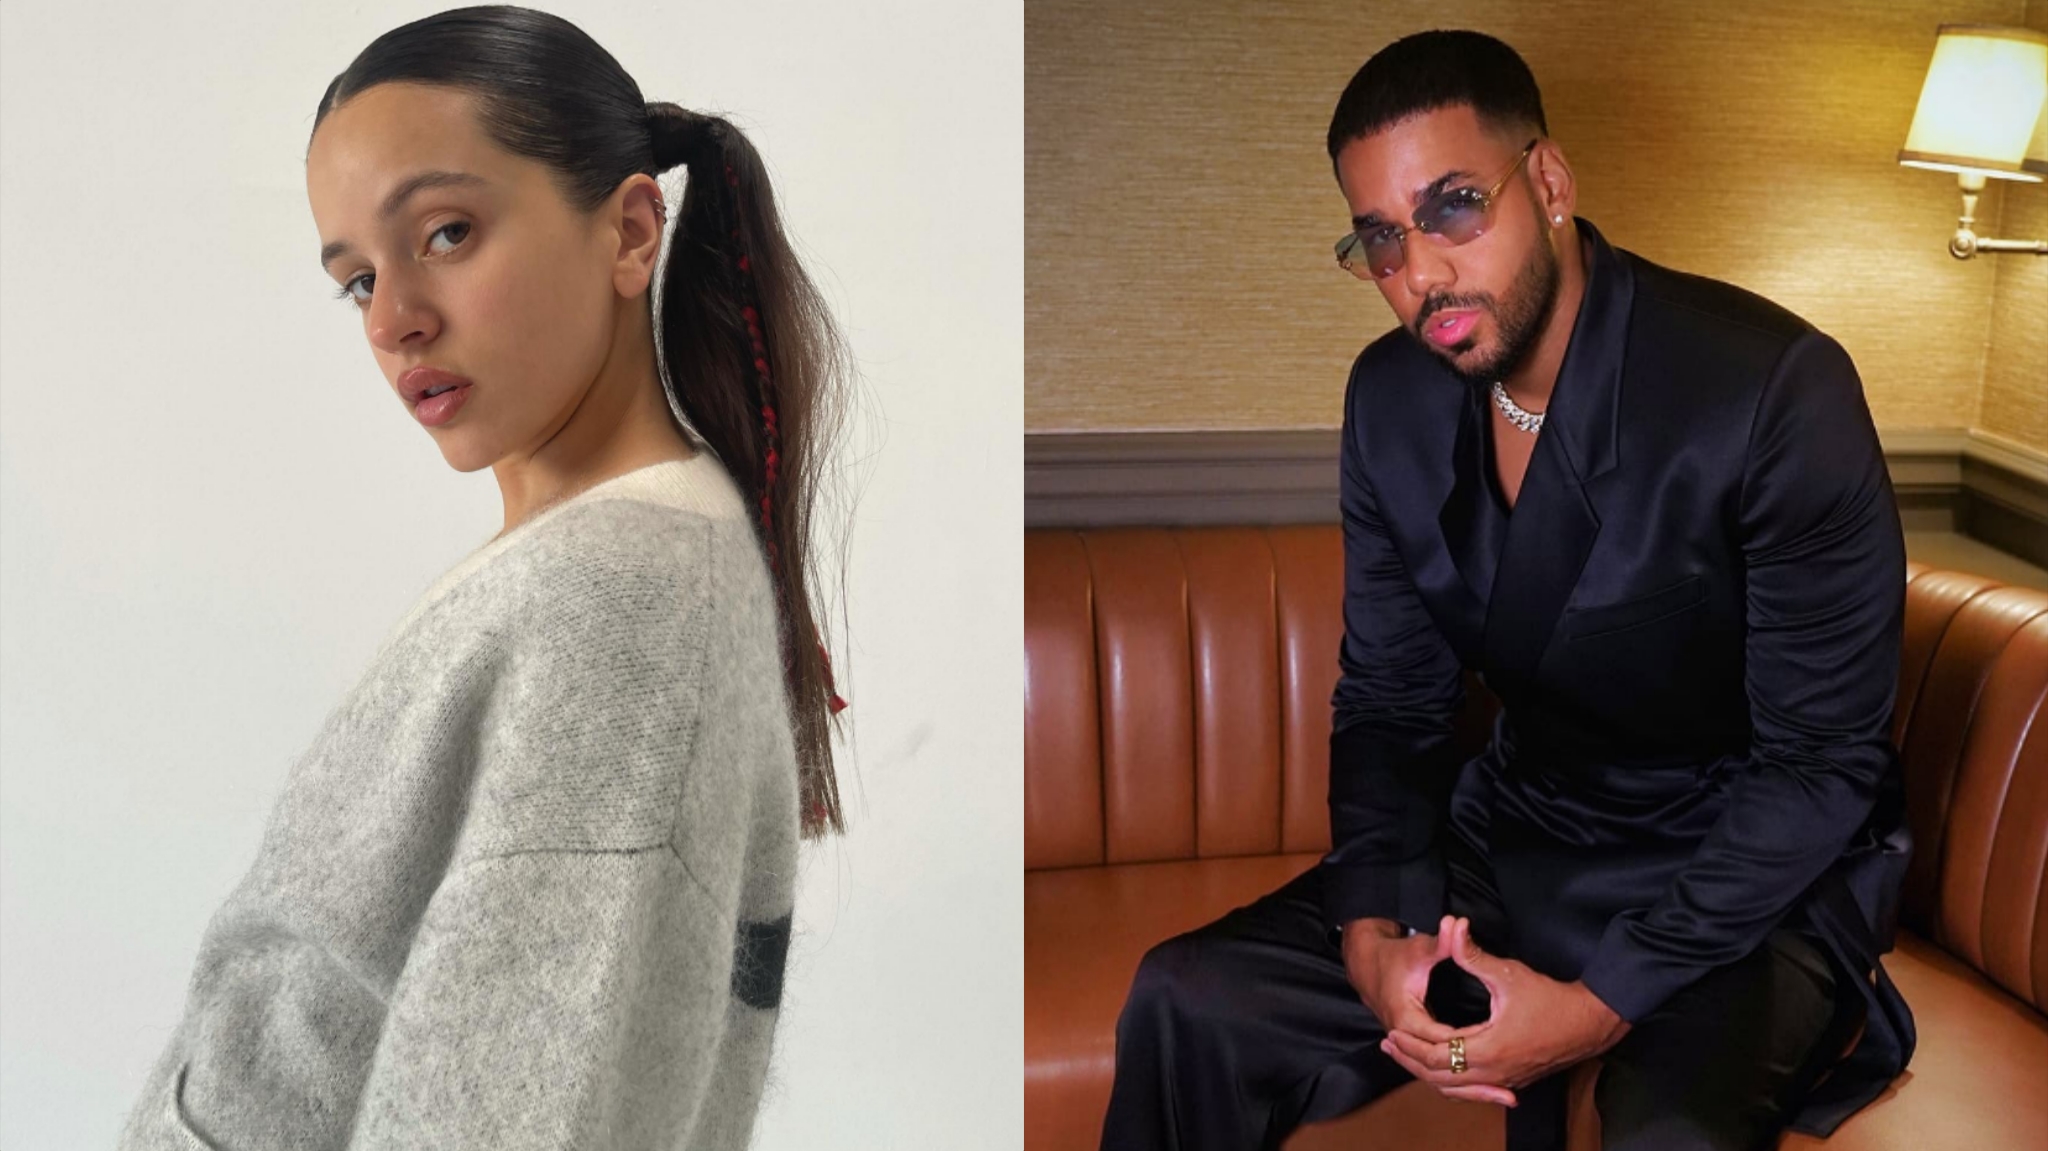 Rosalía y Romeo Santos anuncian su colaboración tan esperada: 'El Pañuelo', Música